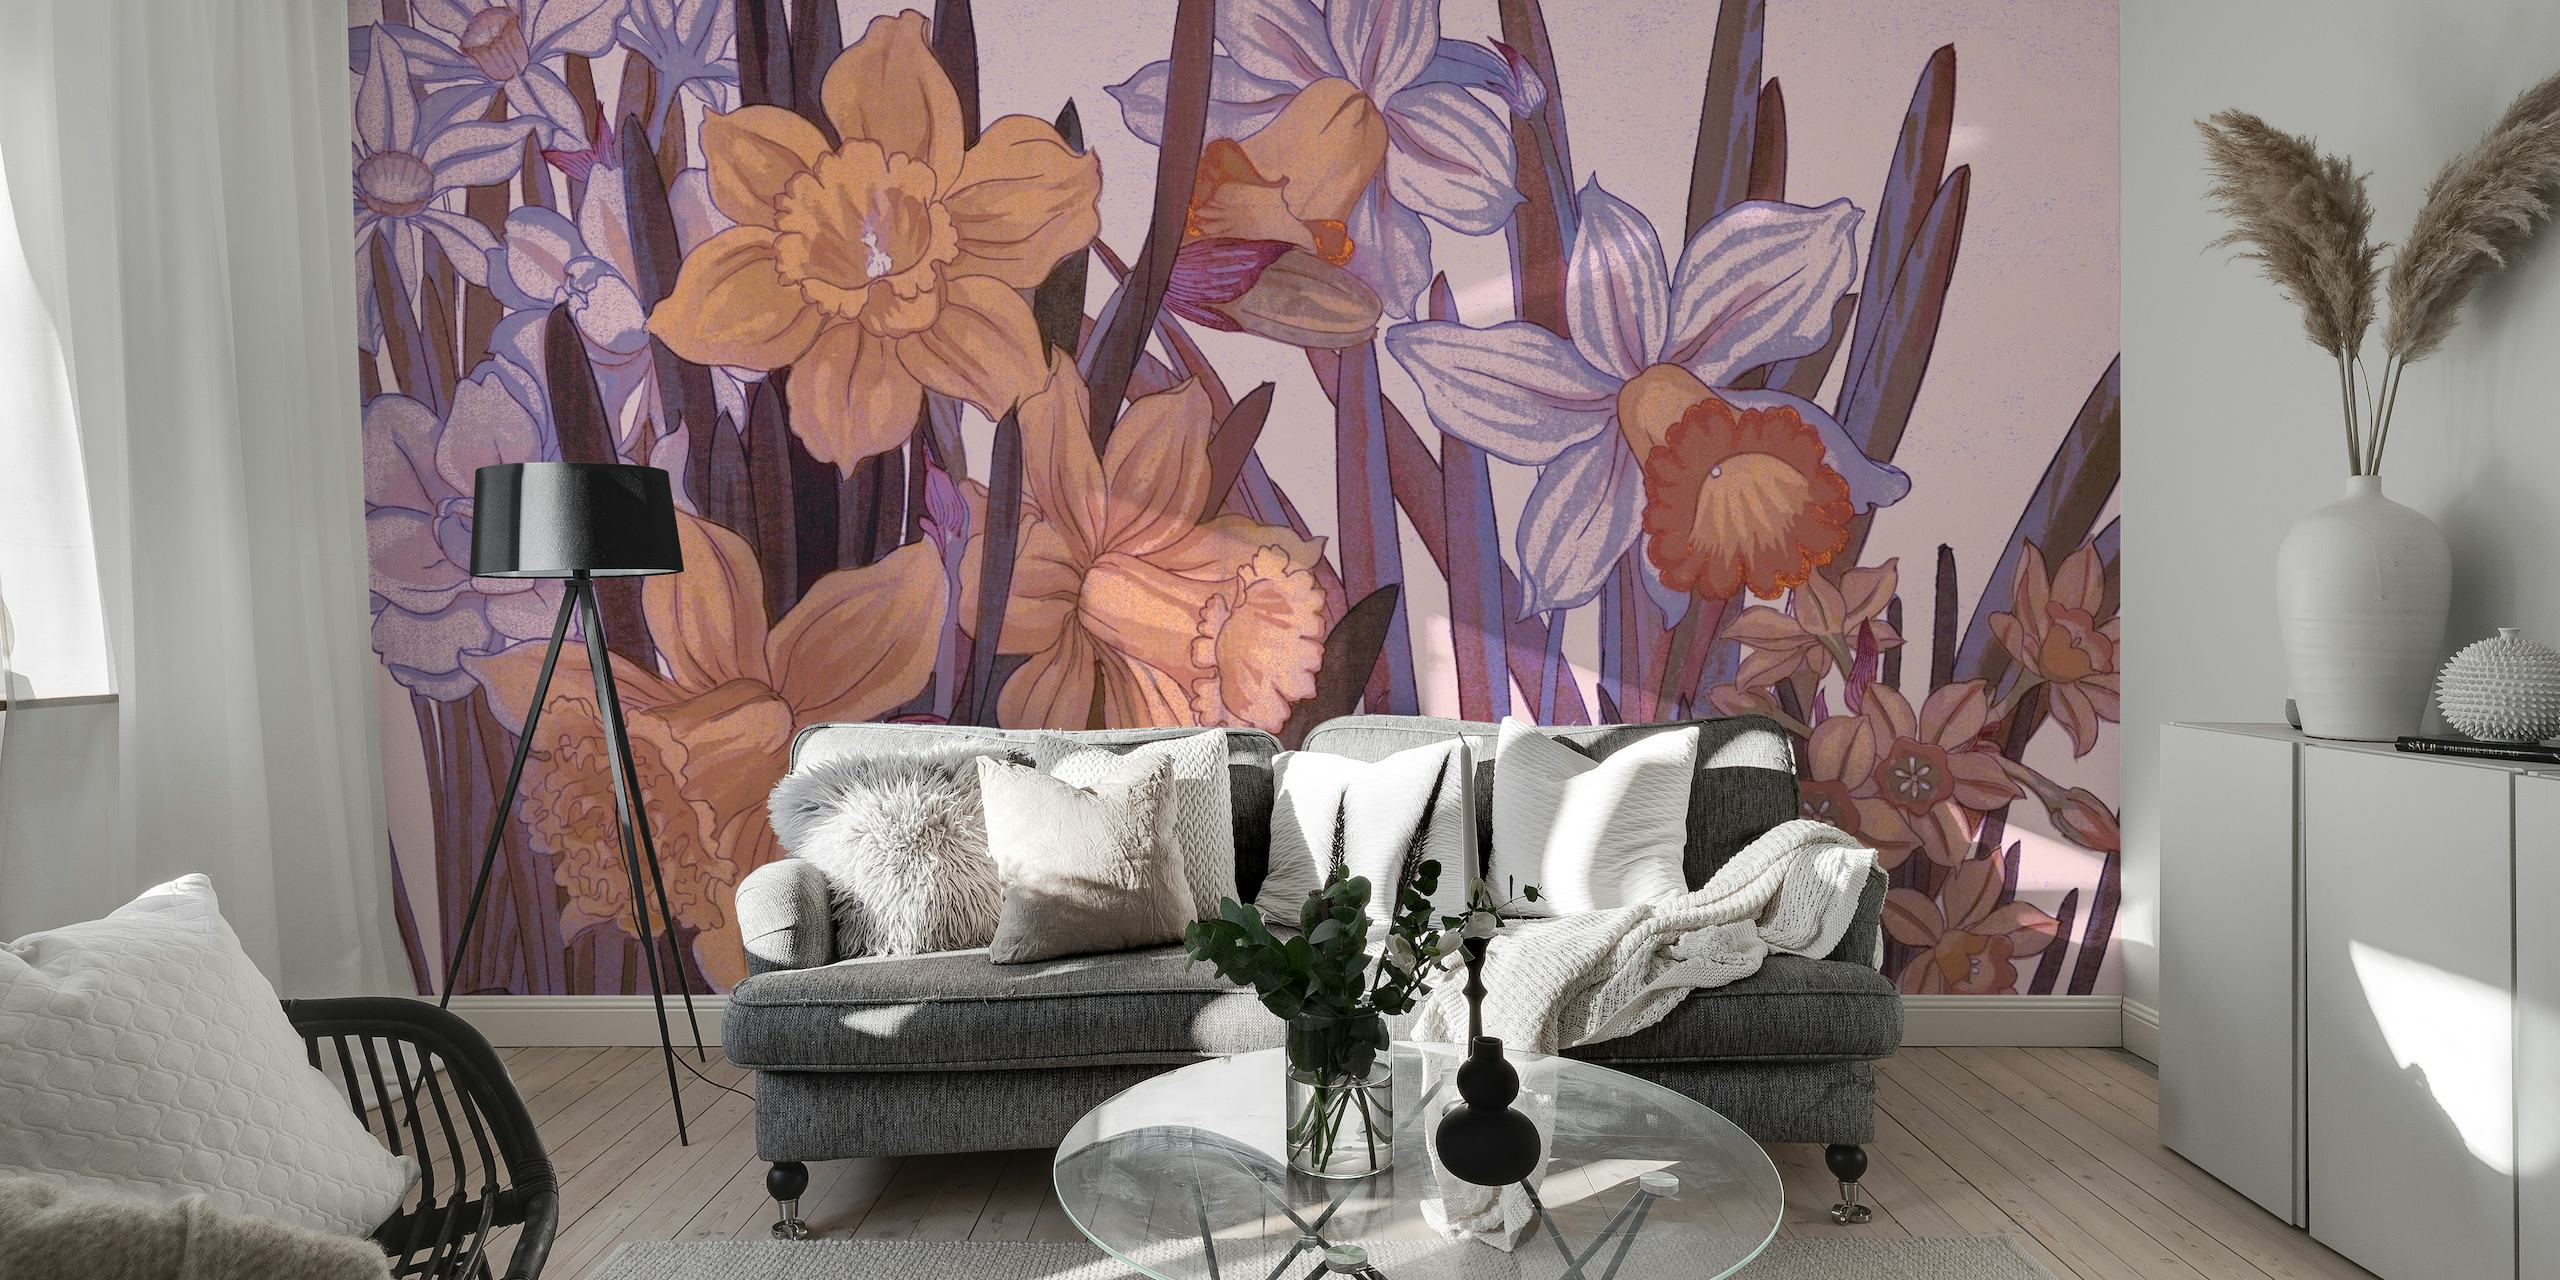 Papier peint floral scandinave mystique avec des fleurs sauvages luxuriantes dans des tons violets et bleus